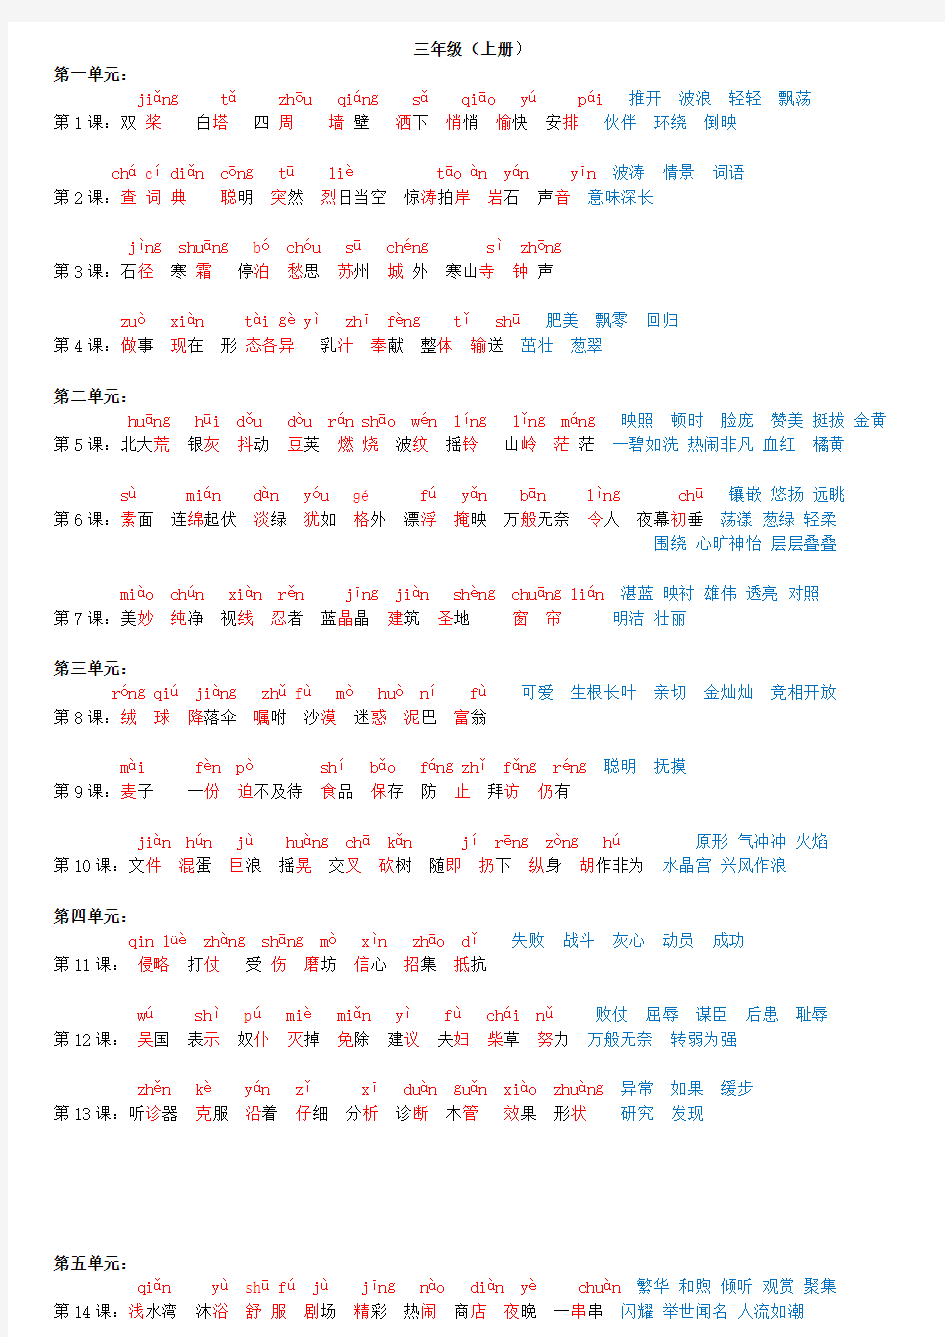 苏教版语文三年级上册字词一览表(注有拼音)